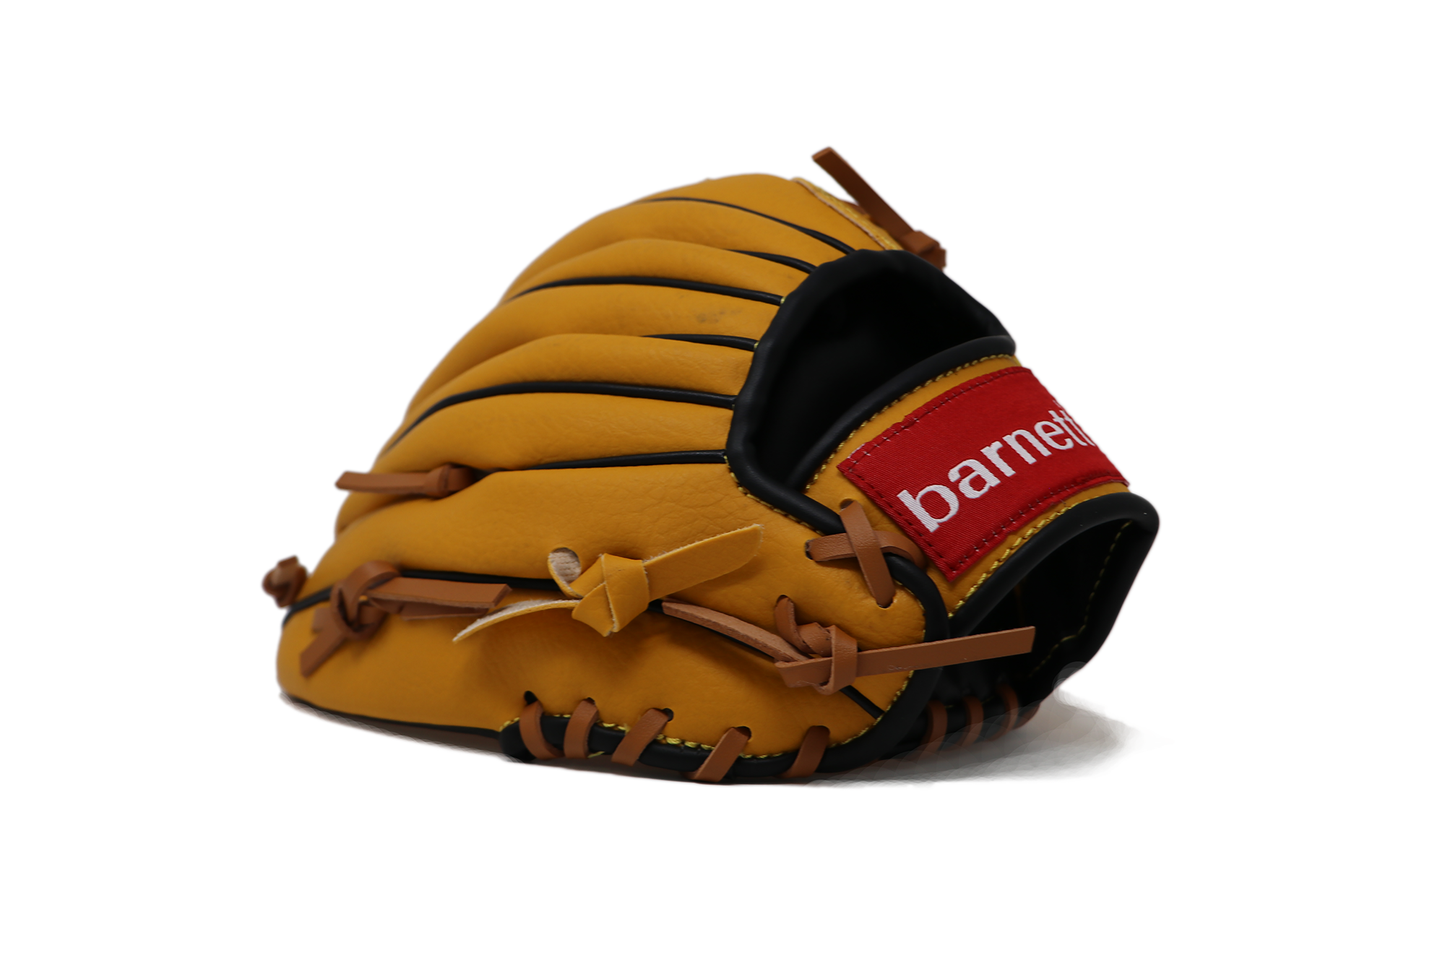 JL-110 - Baseballová rukavice, outfield, polyuretan, 11", hnědá